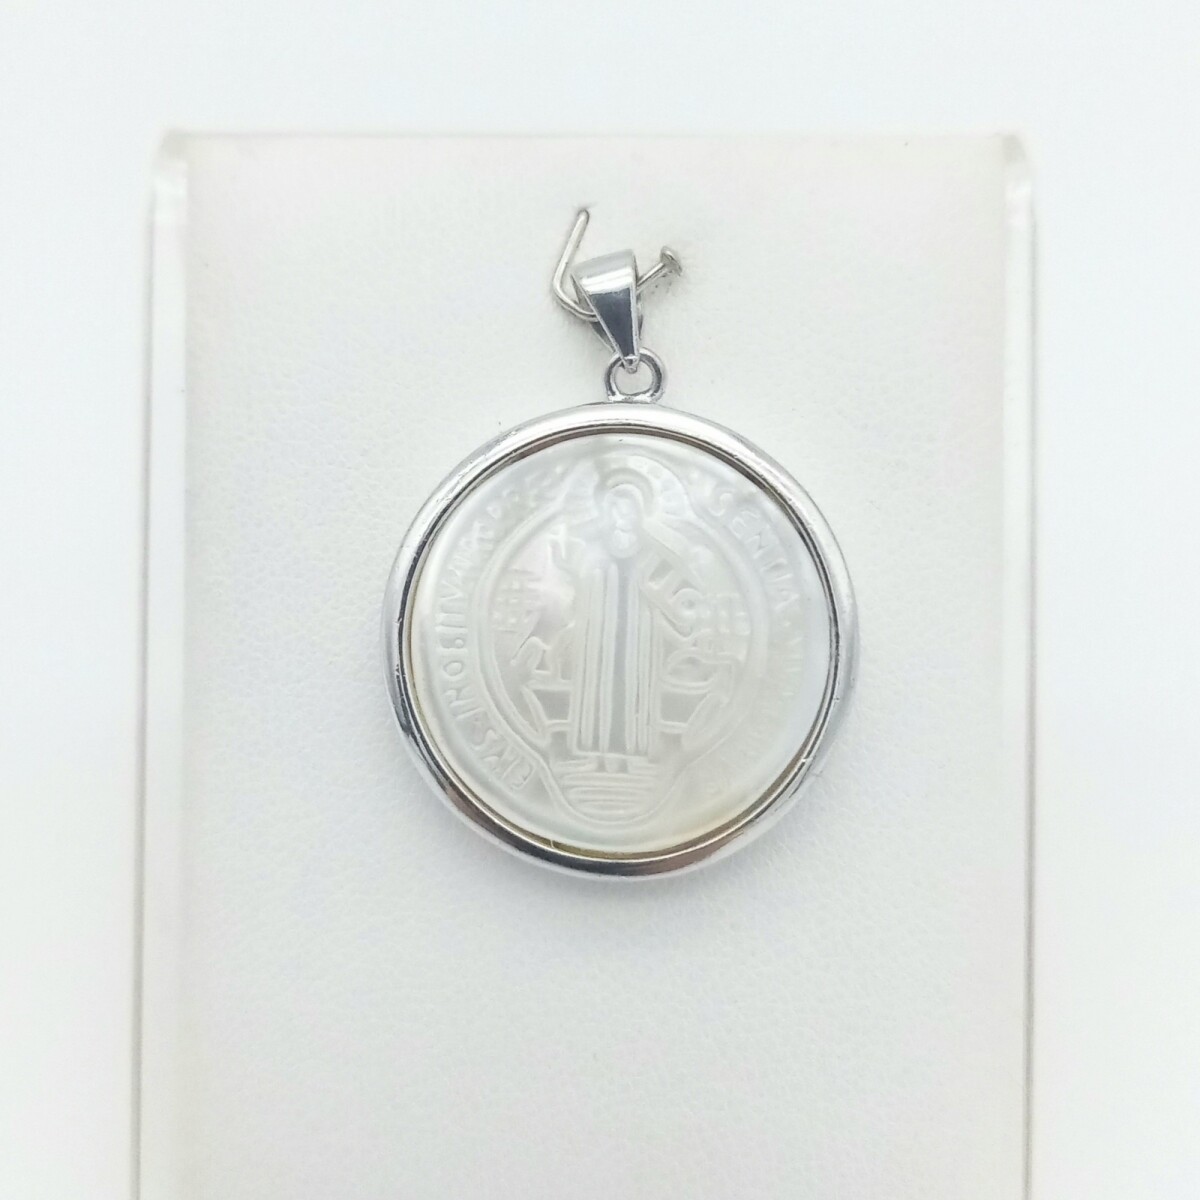 Medalla religiosa de plata 925 y nácar, SAN BENITO. 